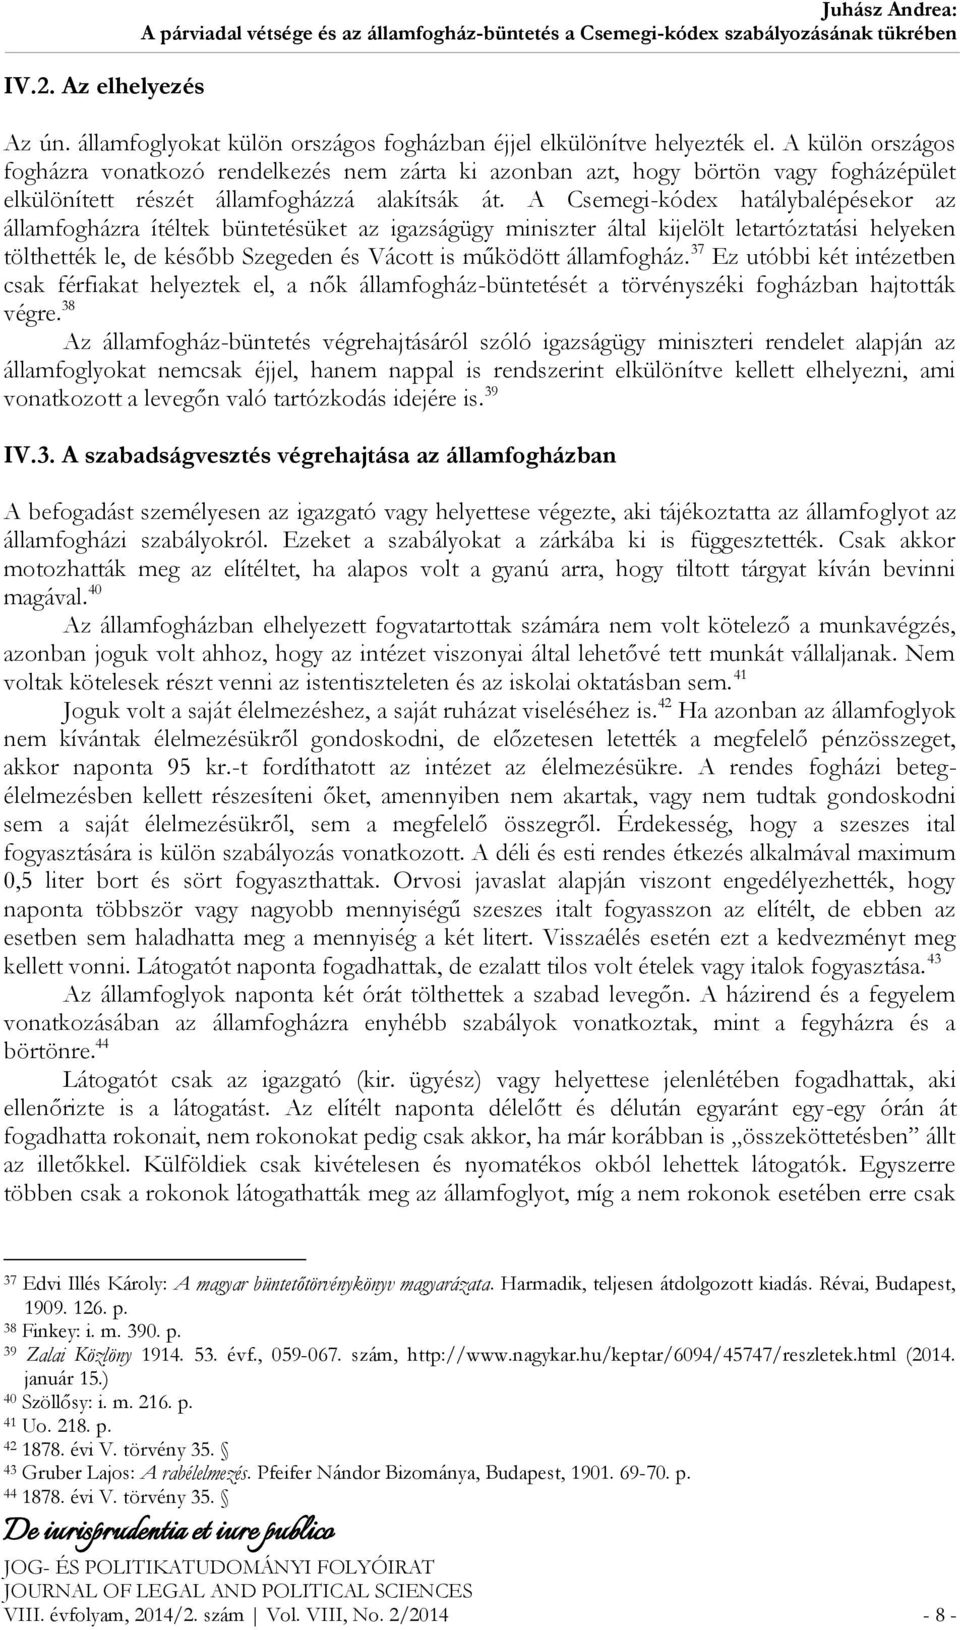 A Csemegi-kódex hatálybalépésekor az államfogházra ítéltek büntetésüket az igazságügy miniszter által kijelölt letartóztatási helyeken tölthették le, de később Szegeden és Vácott is működött